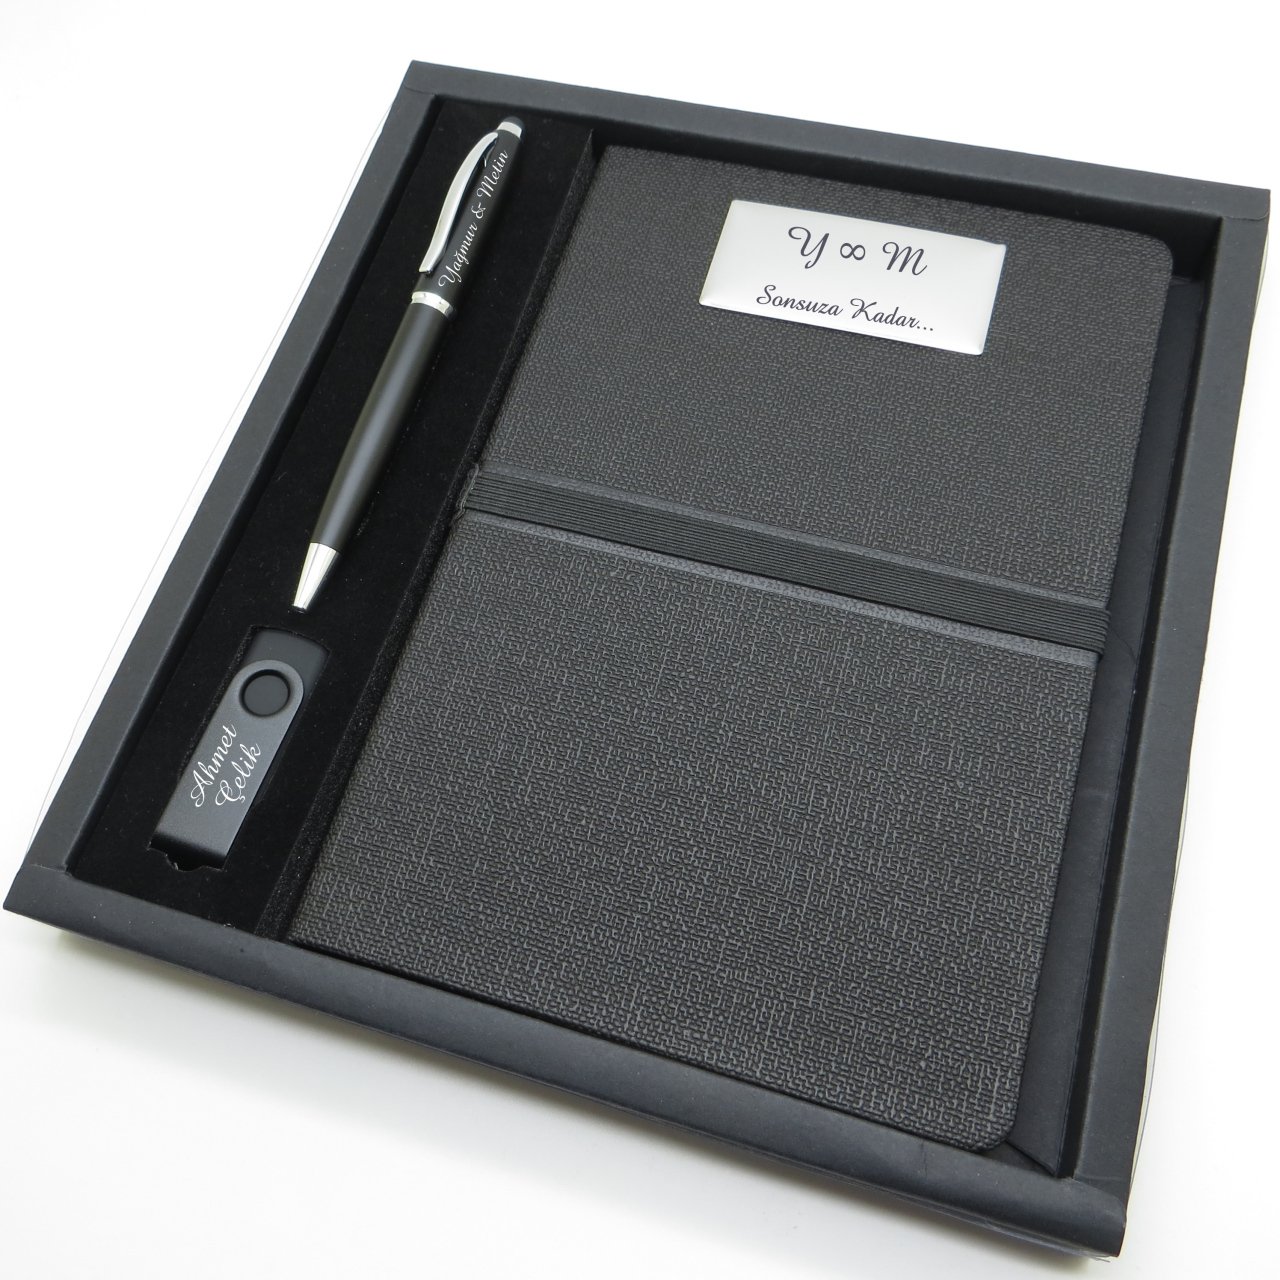 Wings SG107 İsme Özel Mat Siyah Hediyelik Set | Touch Pen Kalem + 16GB. Usb Bellek + 15x21 Defter | Hepsi İsme Özel